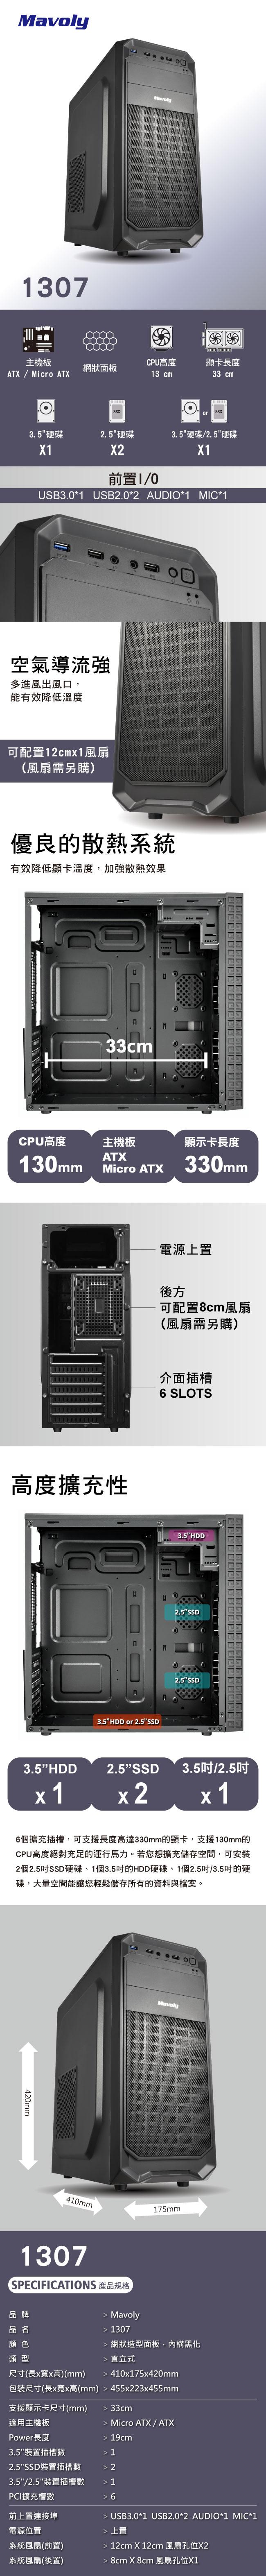 松聖 1307 可光碟 ATX 黑化 機箱 USB3.0